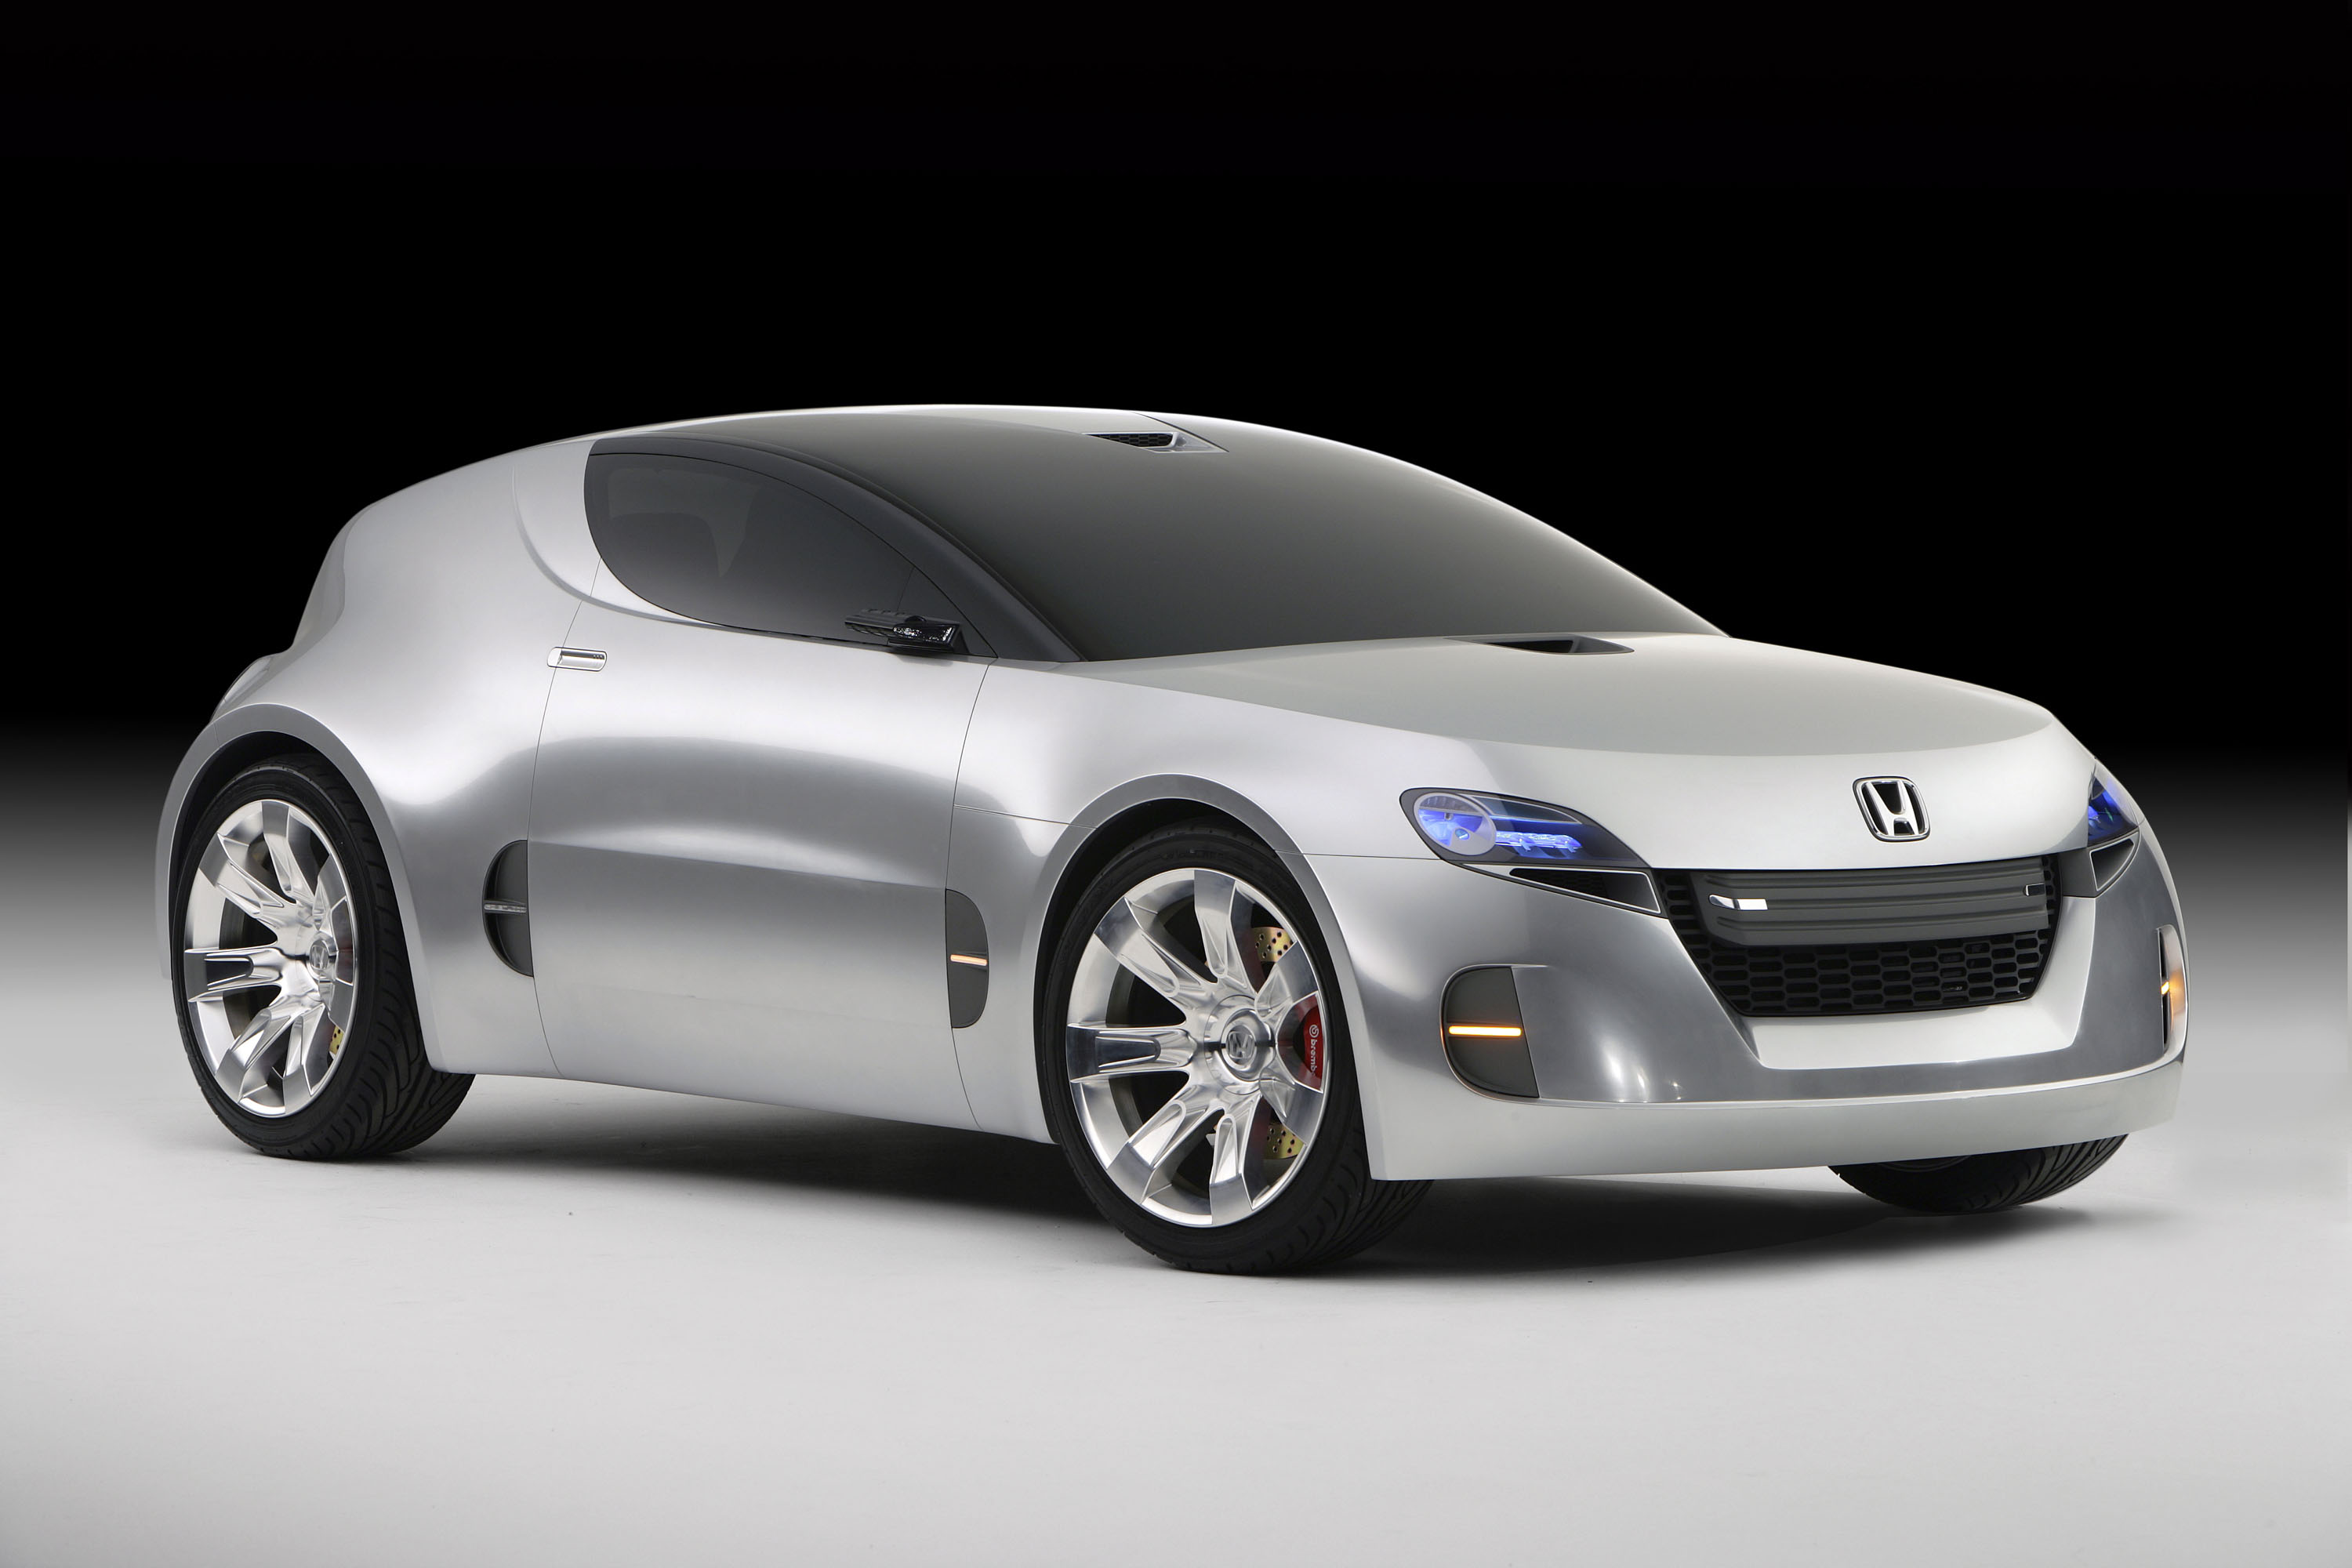 Honda REMIX Concept